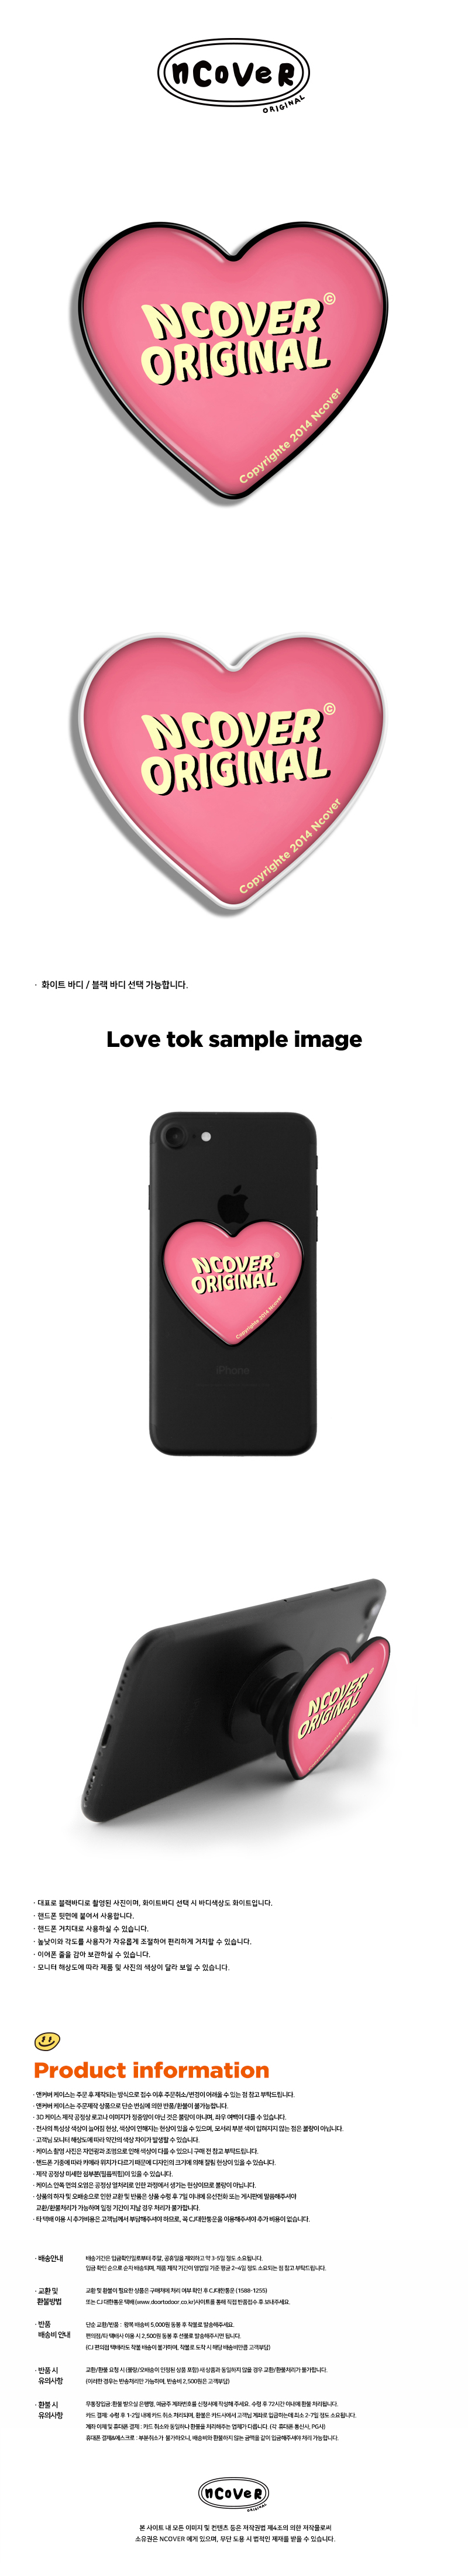  Baloo lettering-pink(heart tok)  10,000원 - 바이인터내셔널주식회사 디지털, 모바일 액세서리, 거치대/홀더, 스마트톡/스마트링 바보사랑  Baloo lettering-pink(heart tok)  10,000원 - 바이인터내셔널주식회사 디지털, 모바일 액세서리, 거치대/홀더, 스마트톡/스마트링 바보사랑